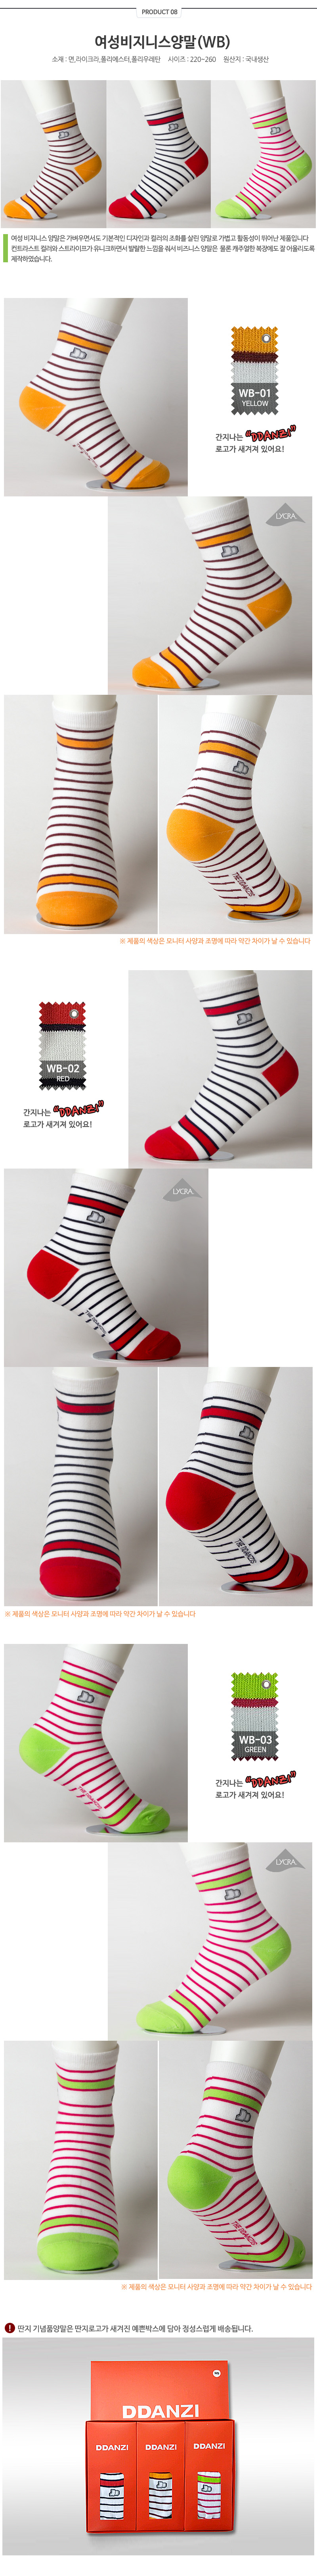 socks_08.jpg